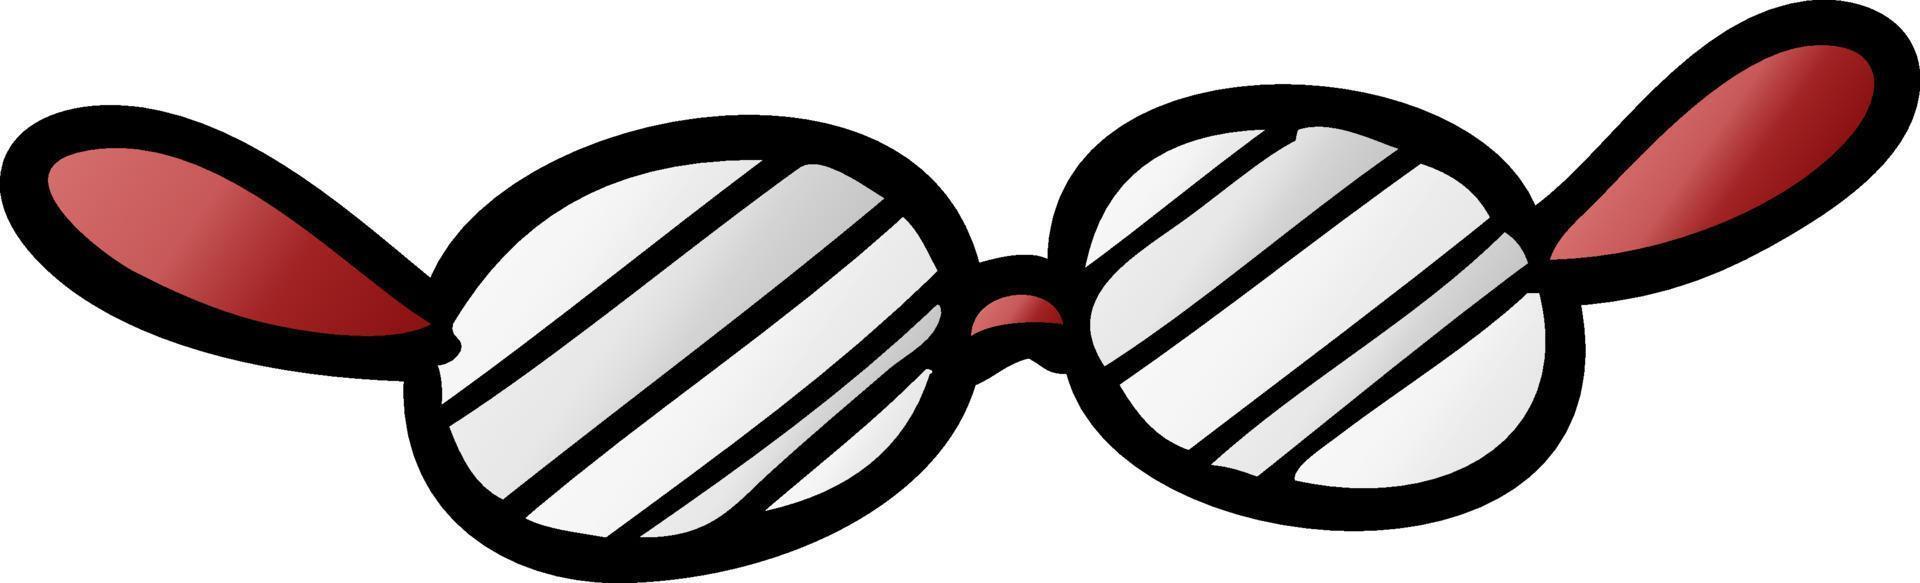 lunettes de dessin animé vecteur